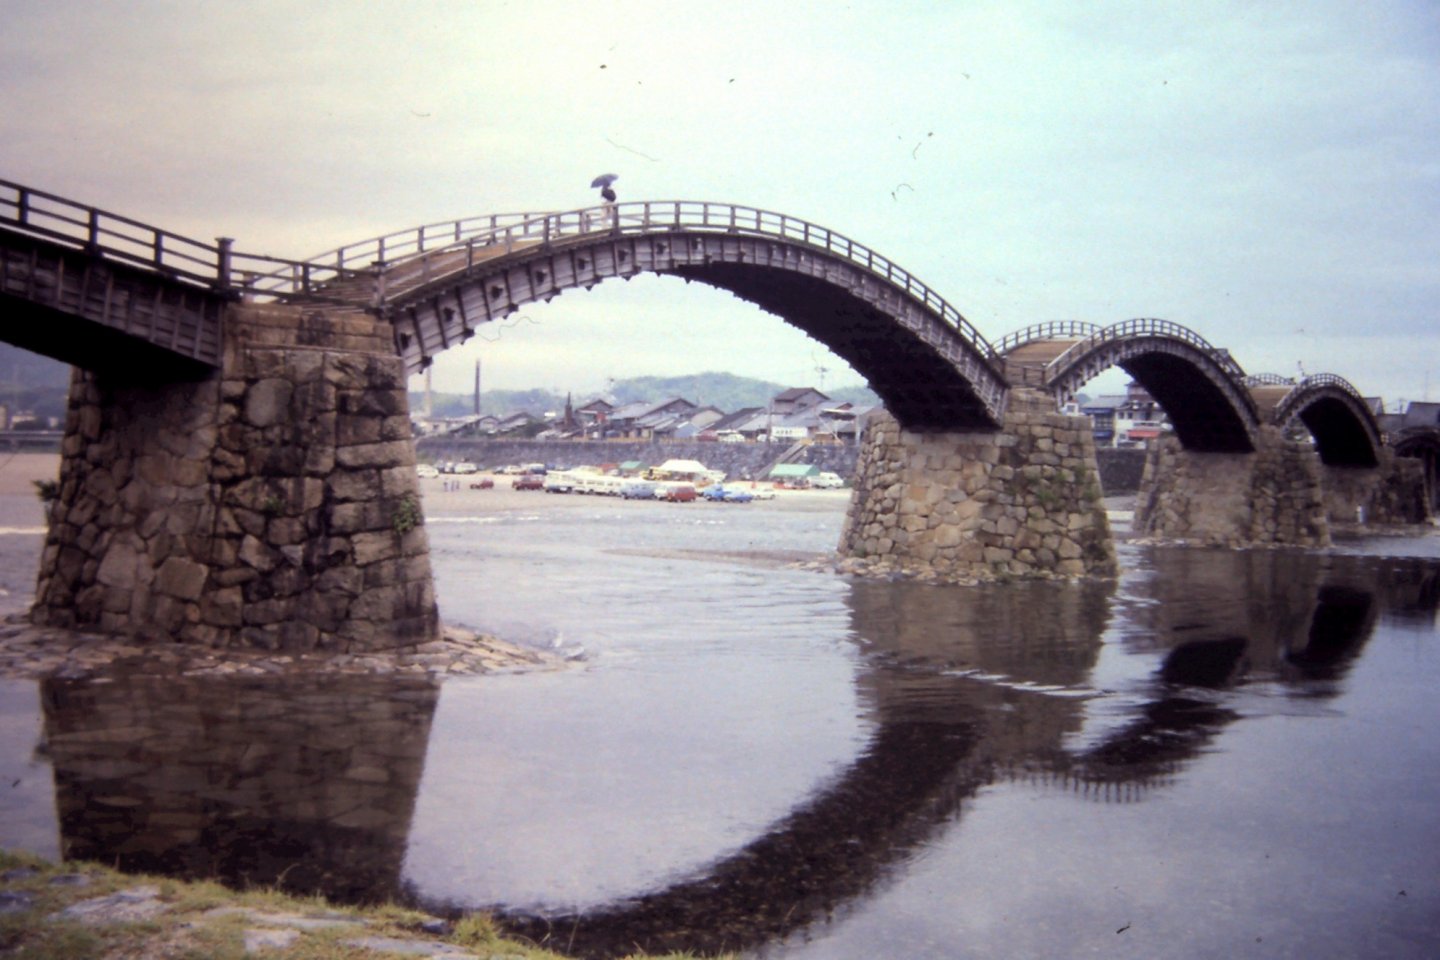 锦带桥是一座由五座拱桥组合而成的大桥。